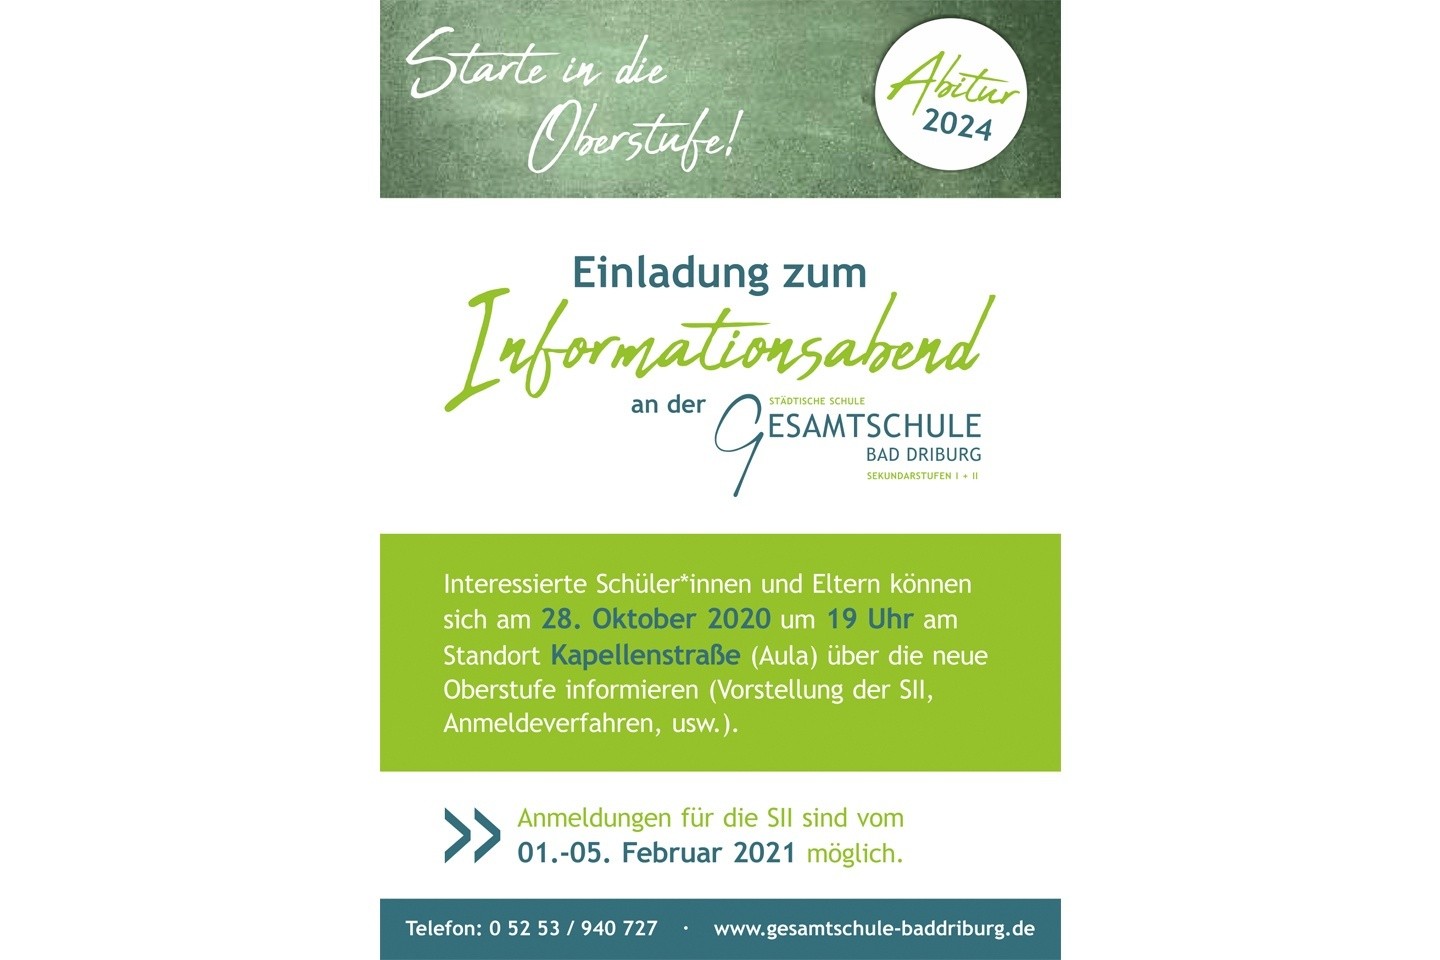 Informationsabend zur neuen Oberstufe an der Gesamtschule Bad Driburg